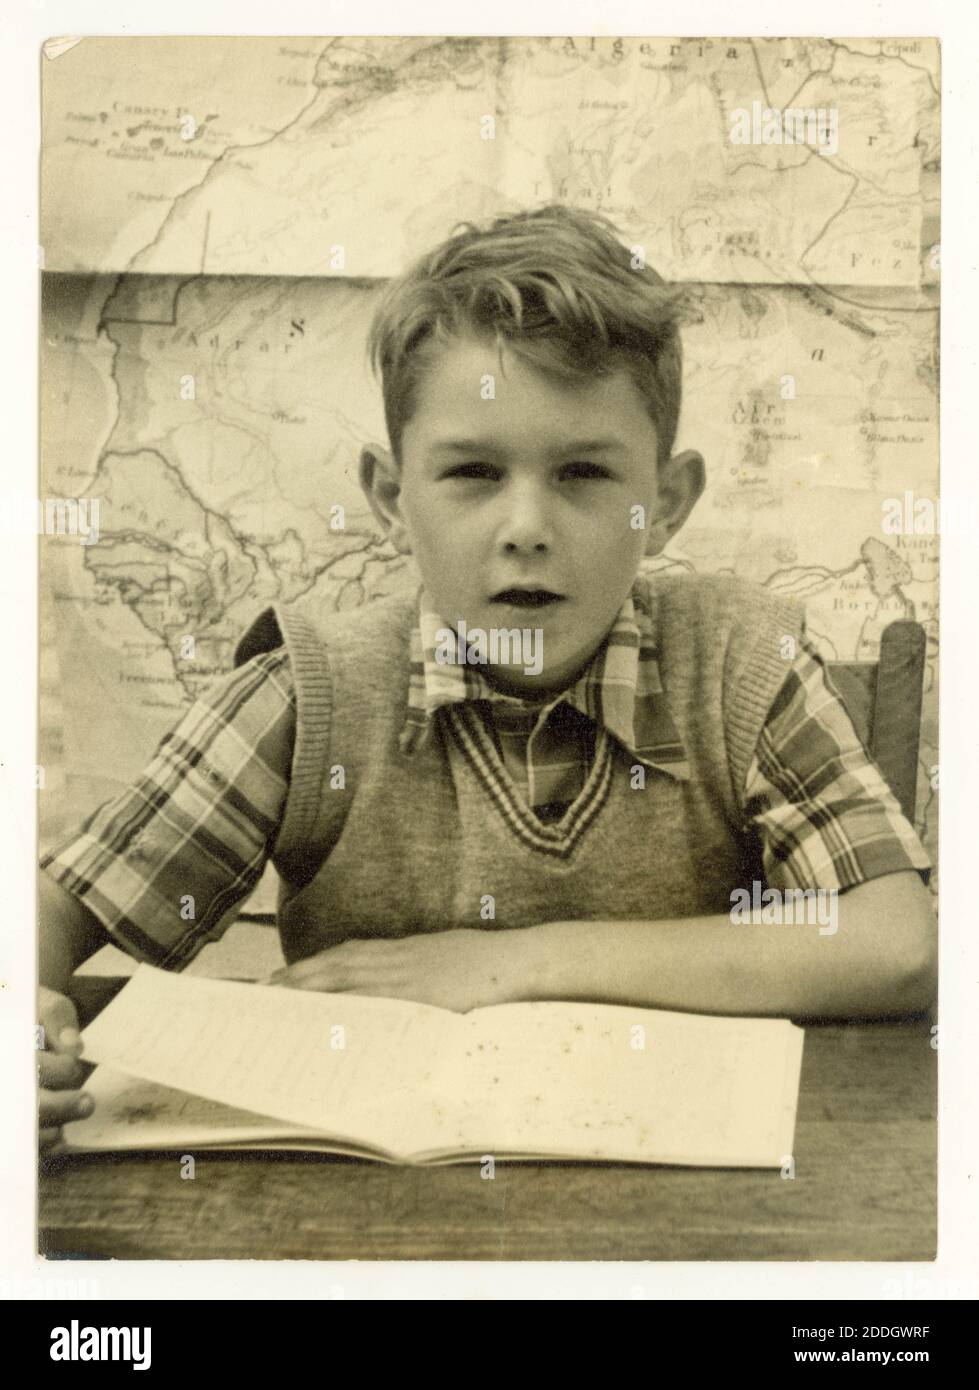 Fotografia originale della scuola degli anni '50 del ragazzo che indossa una camicia da assegno e una canotta seduta su una scrivania che legge un libro, mappa sulla parete dietro di lui, Regno Unito Foto Stock